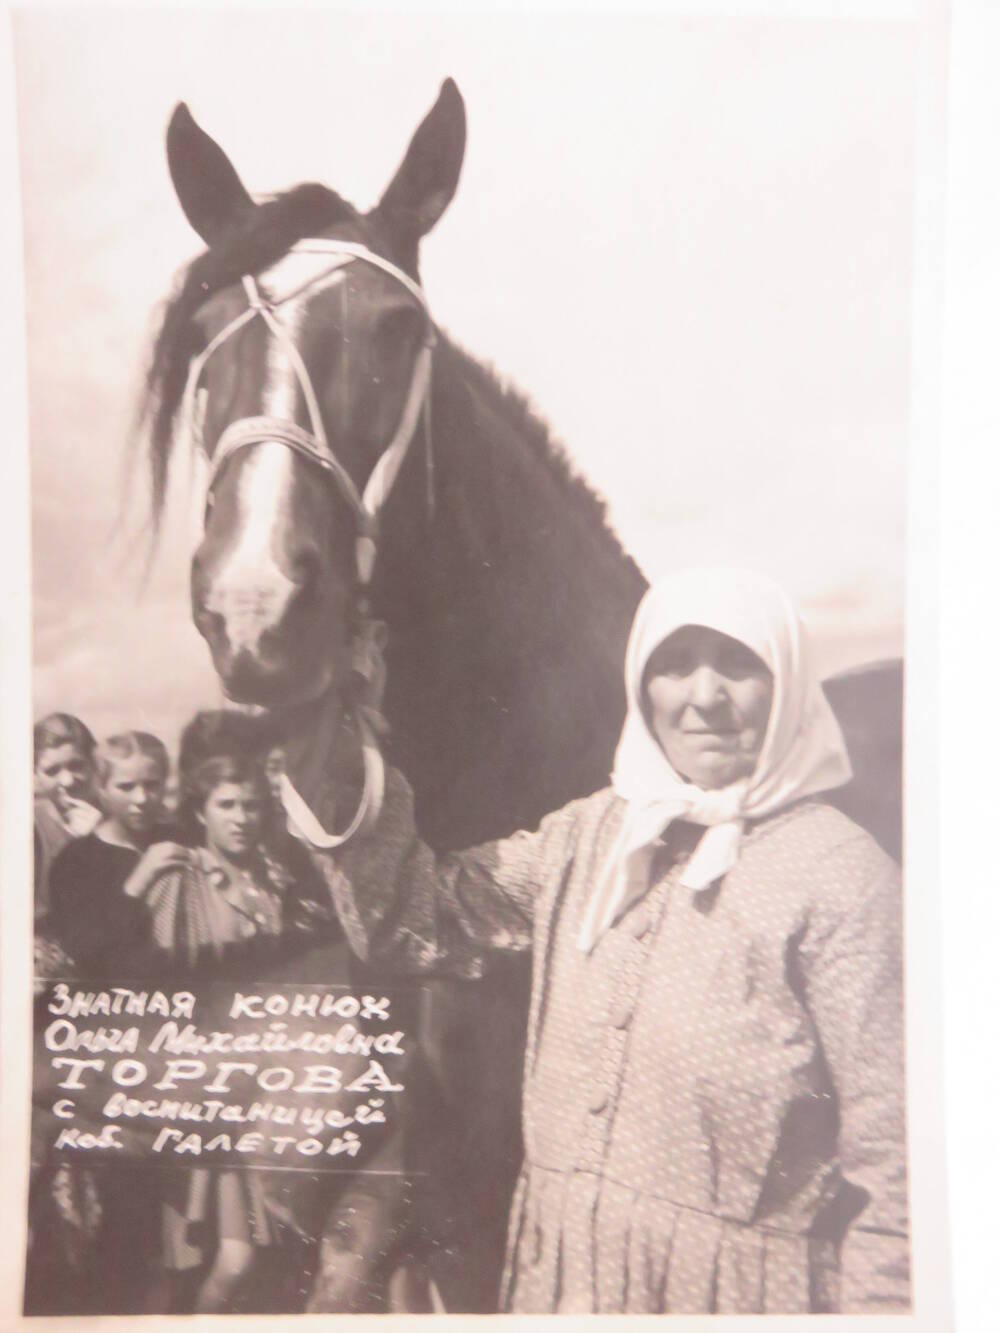 Фотография Знатный конюх О.М. Торгова с кобылой Галетой